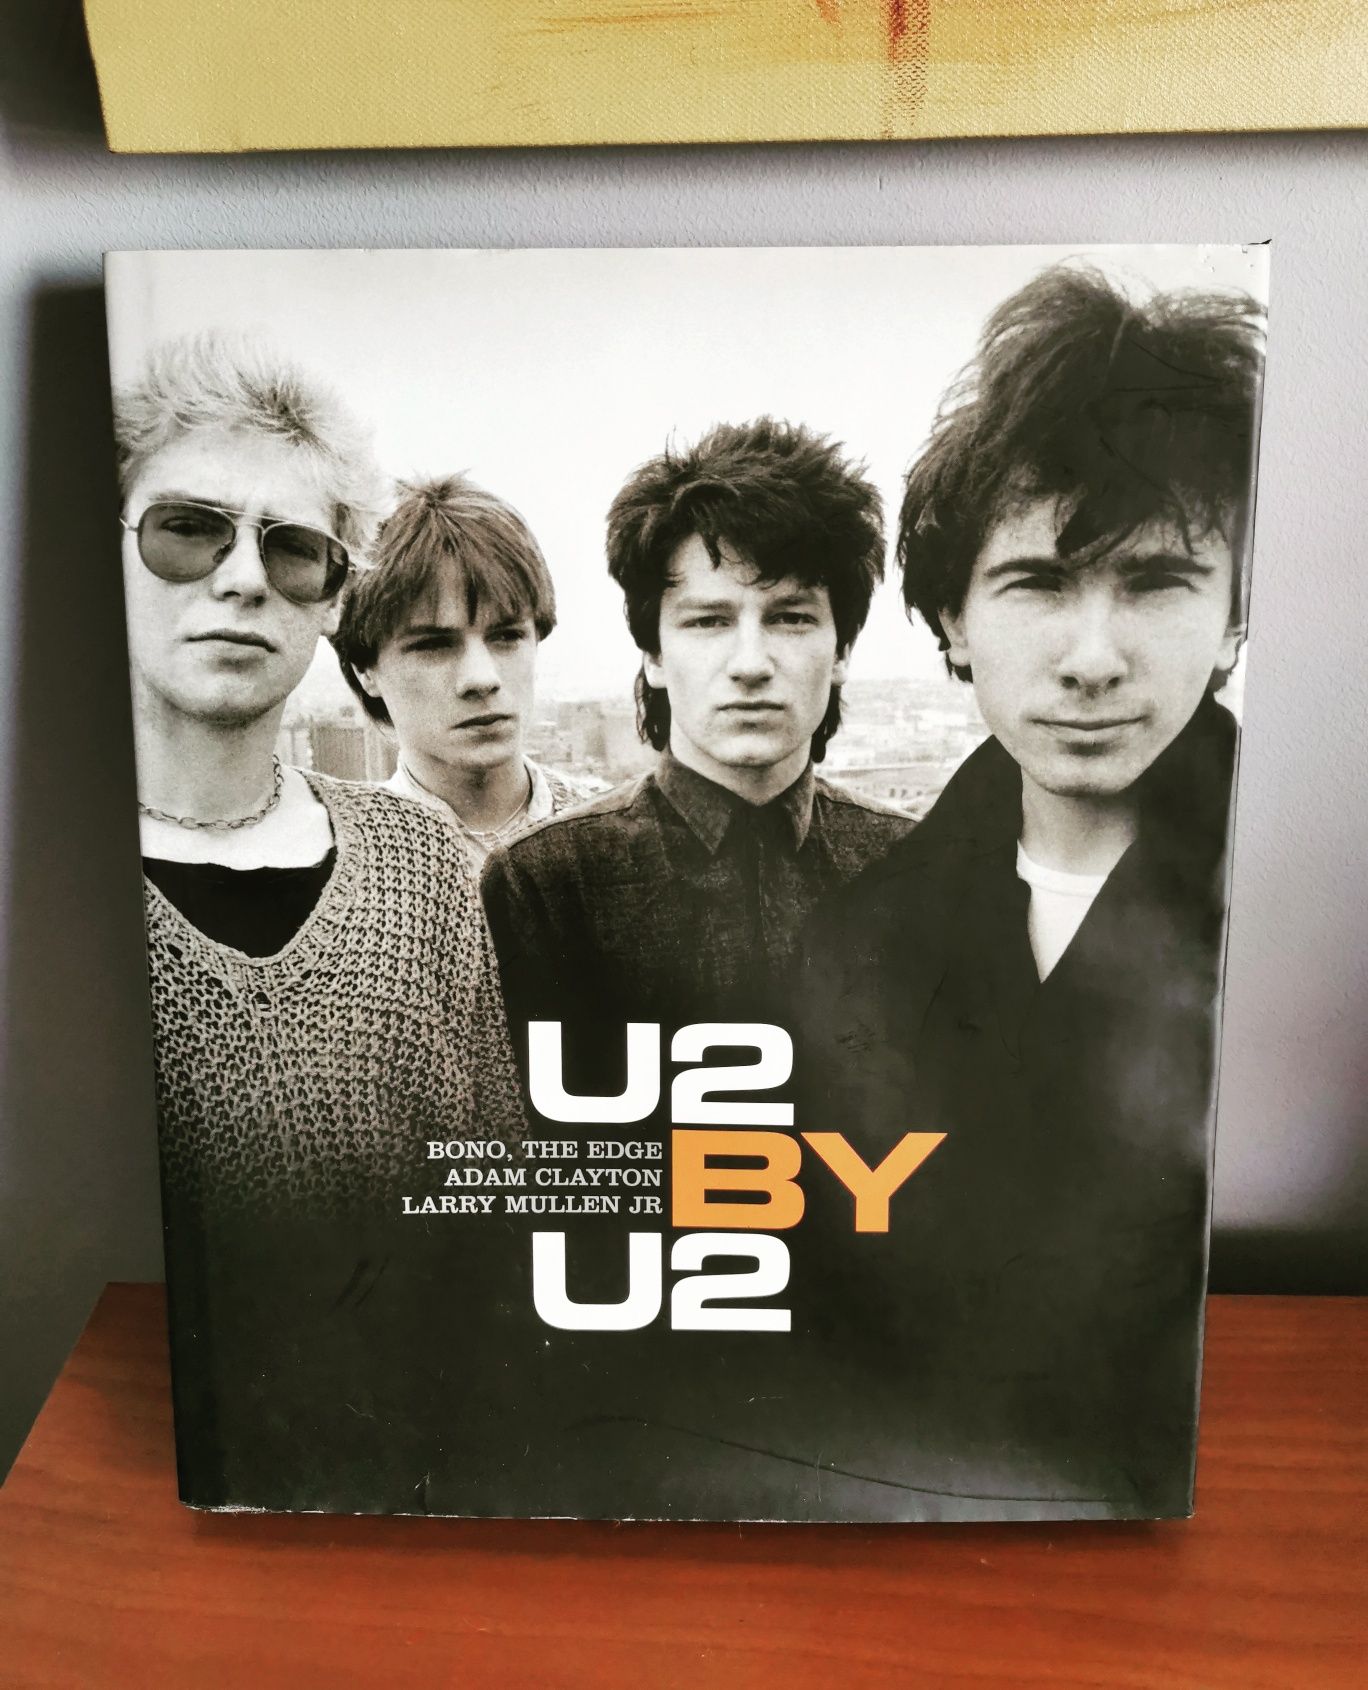 Livro biografia U2 by U2